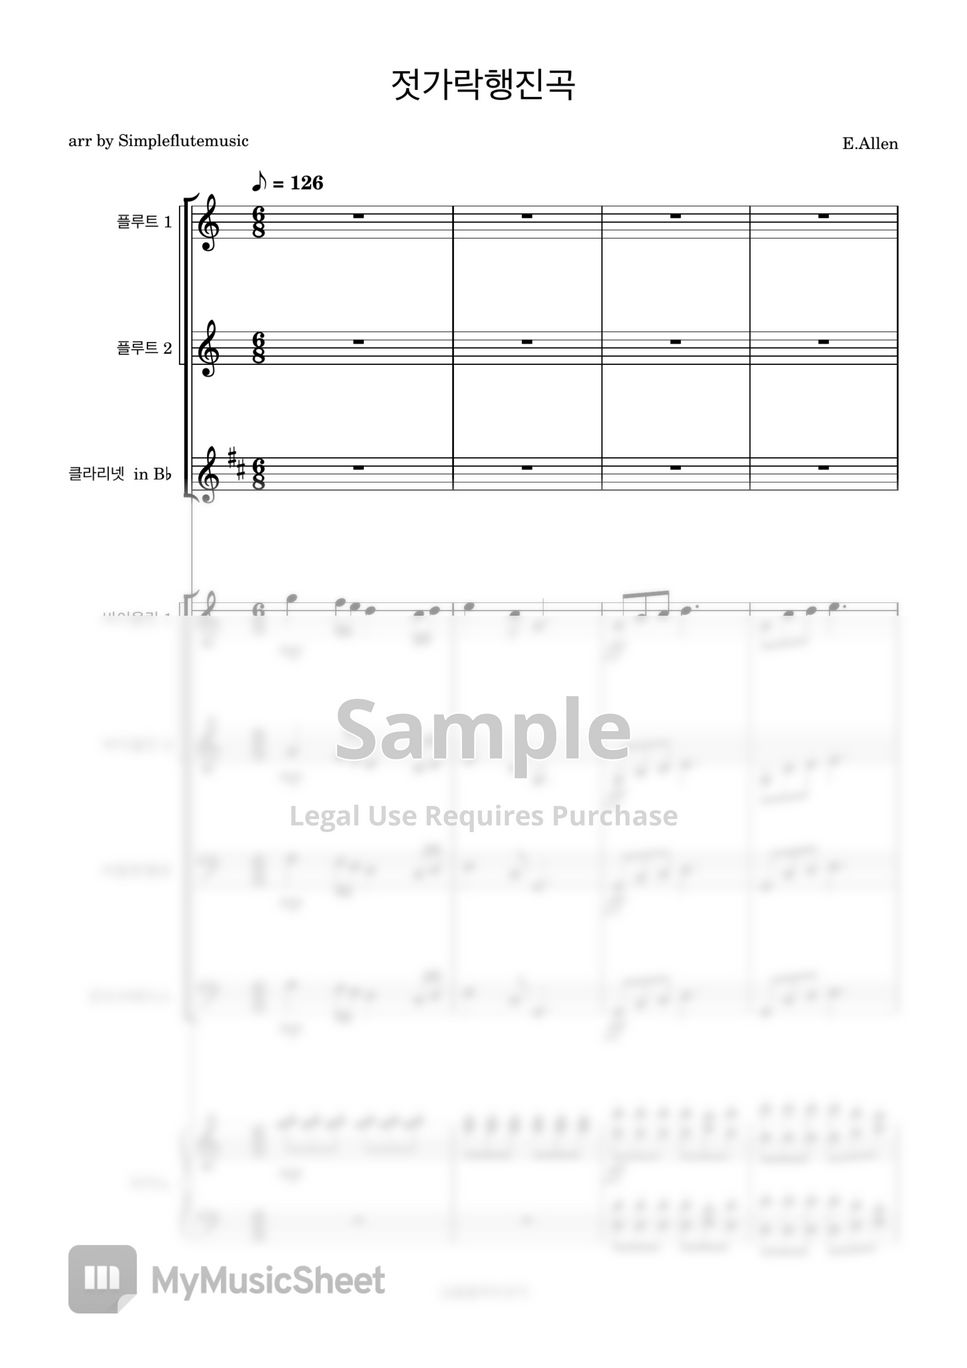 유피미아 앨런 - 젓가락행진곡 (플루트12,클라리넷,바이올린12,첼로,베이스, 피아노 and MR) by 심플플루트뮤직